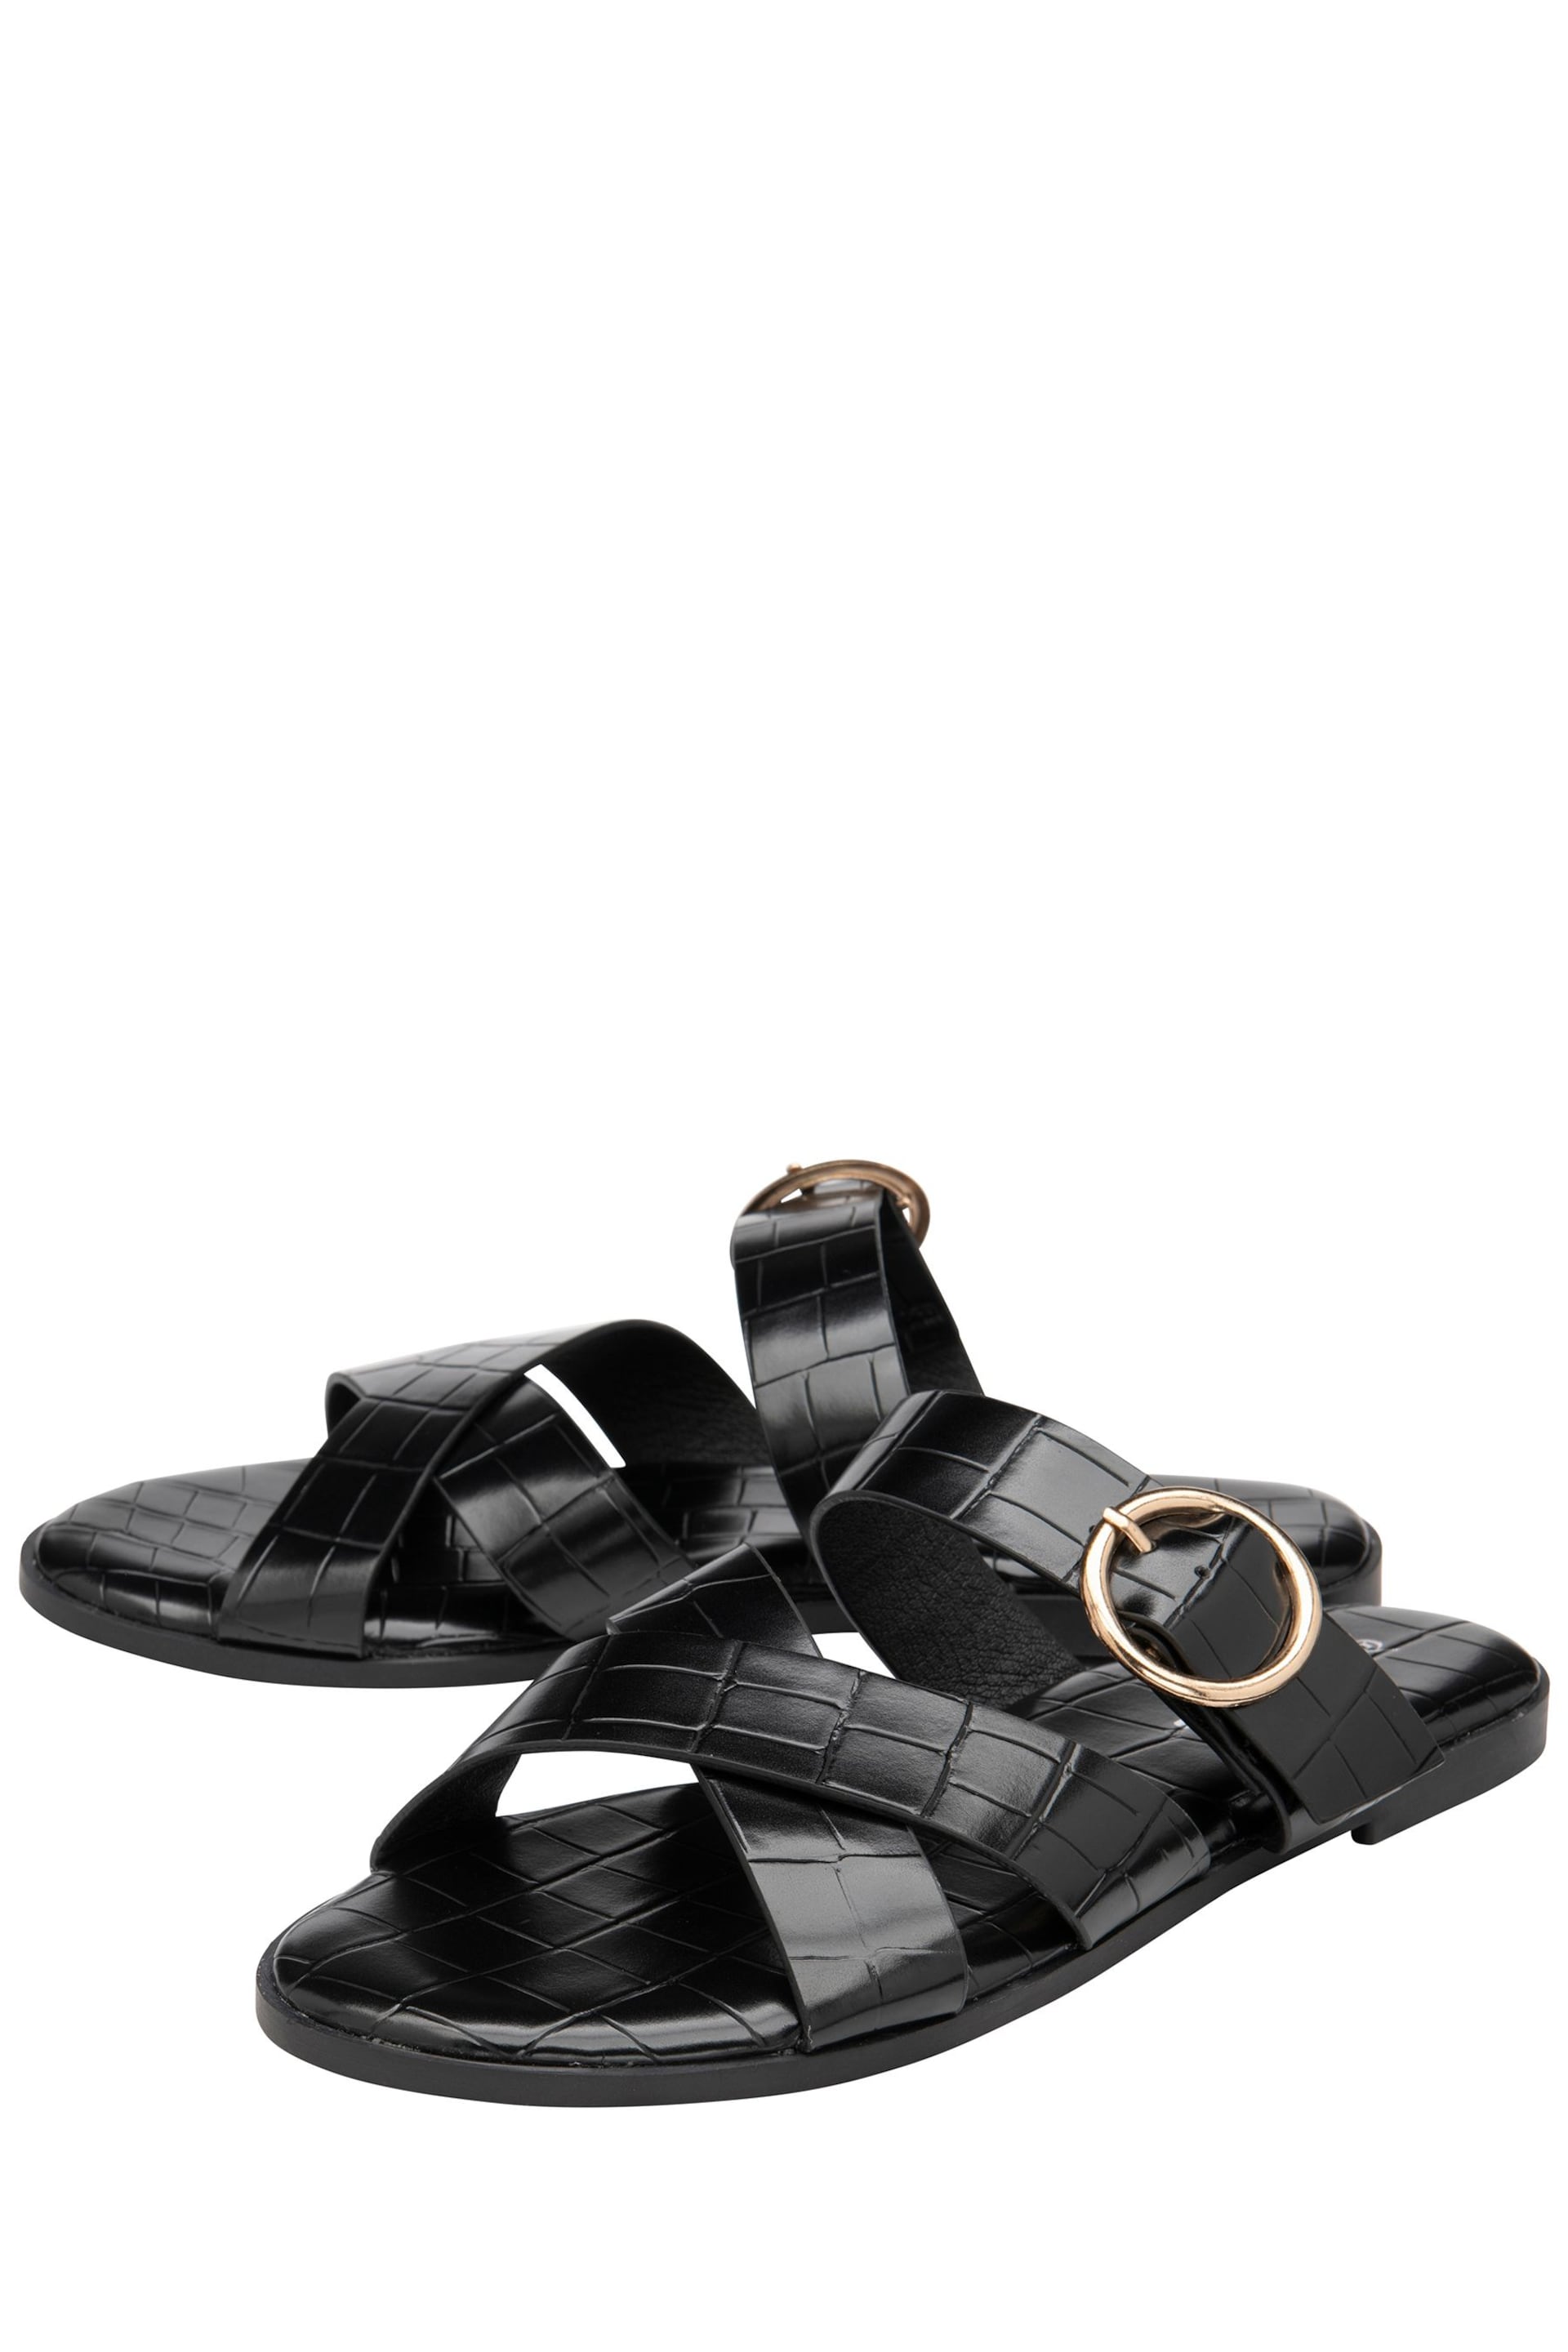 Dunlop Black Open-Toe Sandals - Image 2 of 4